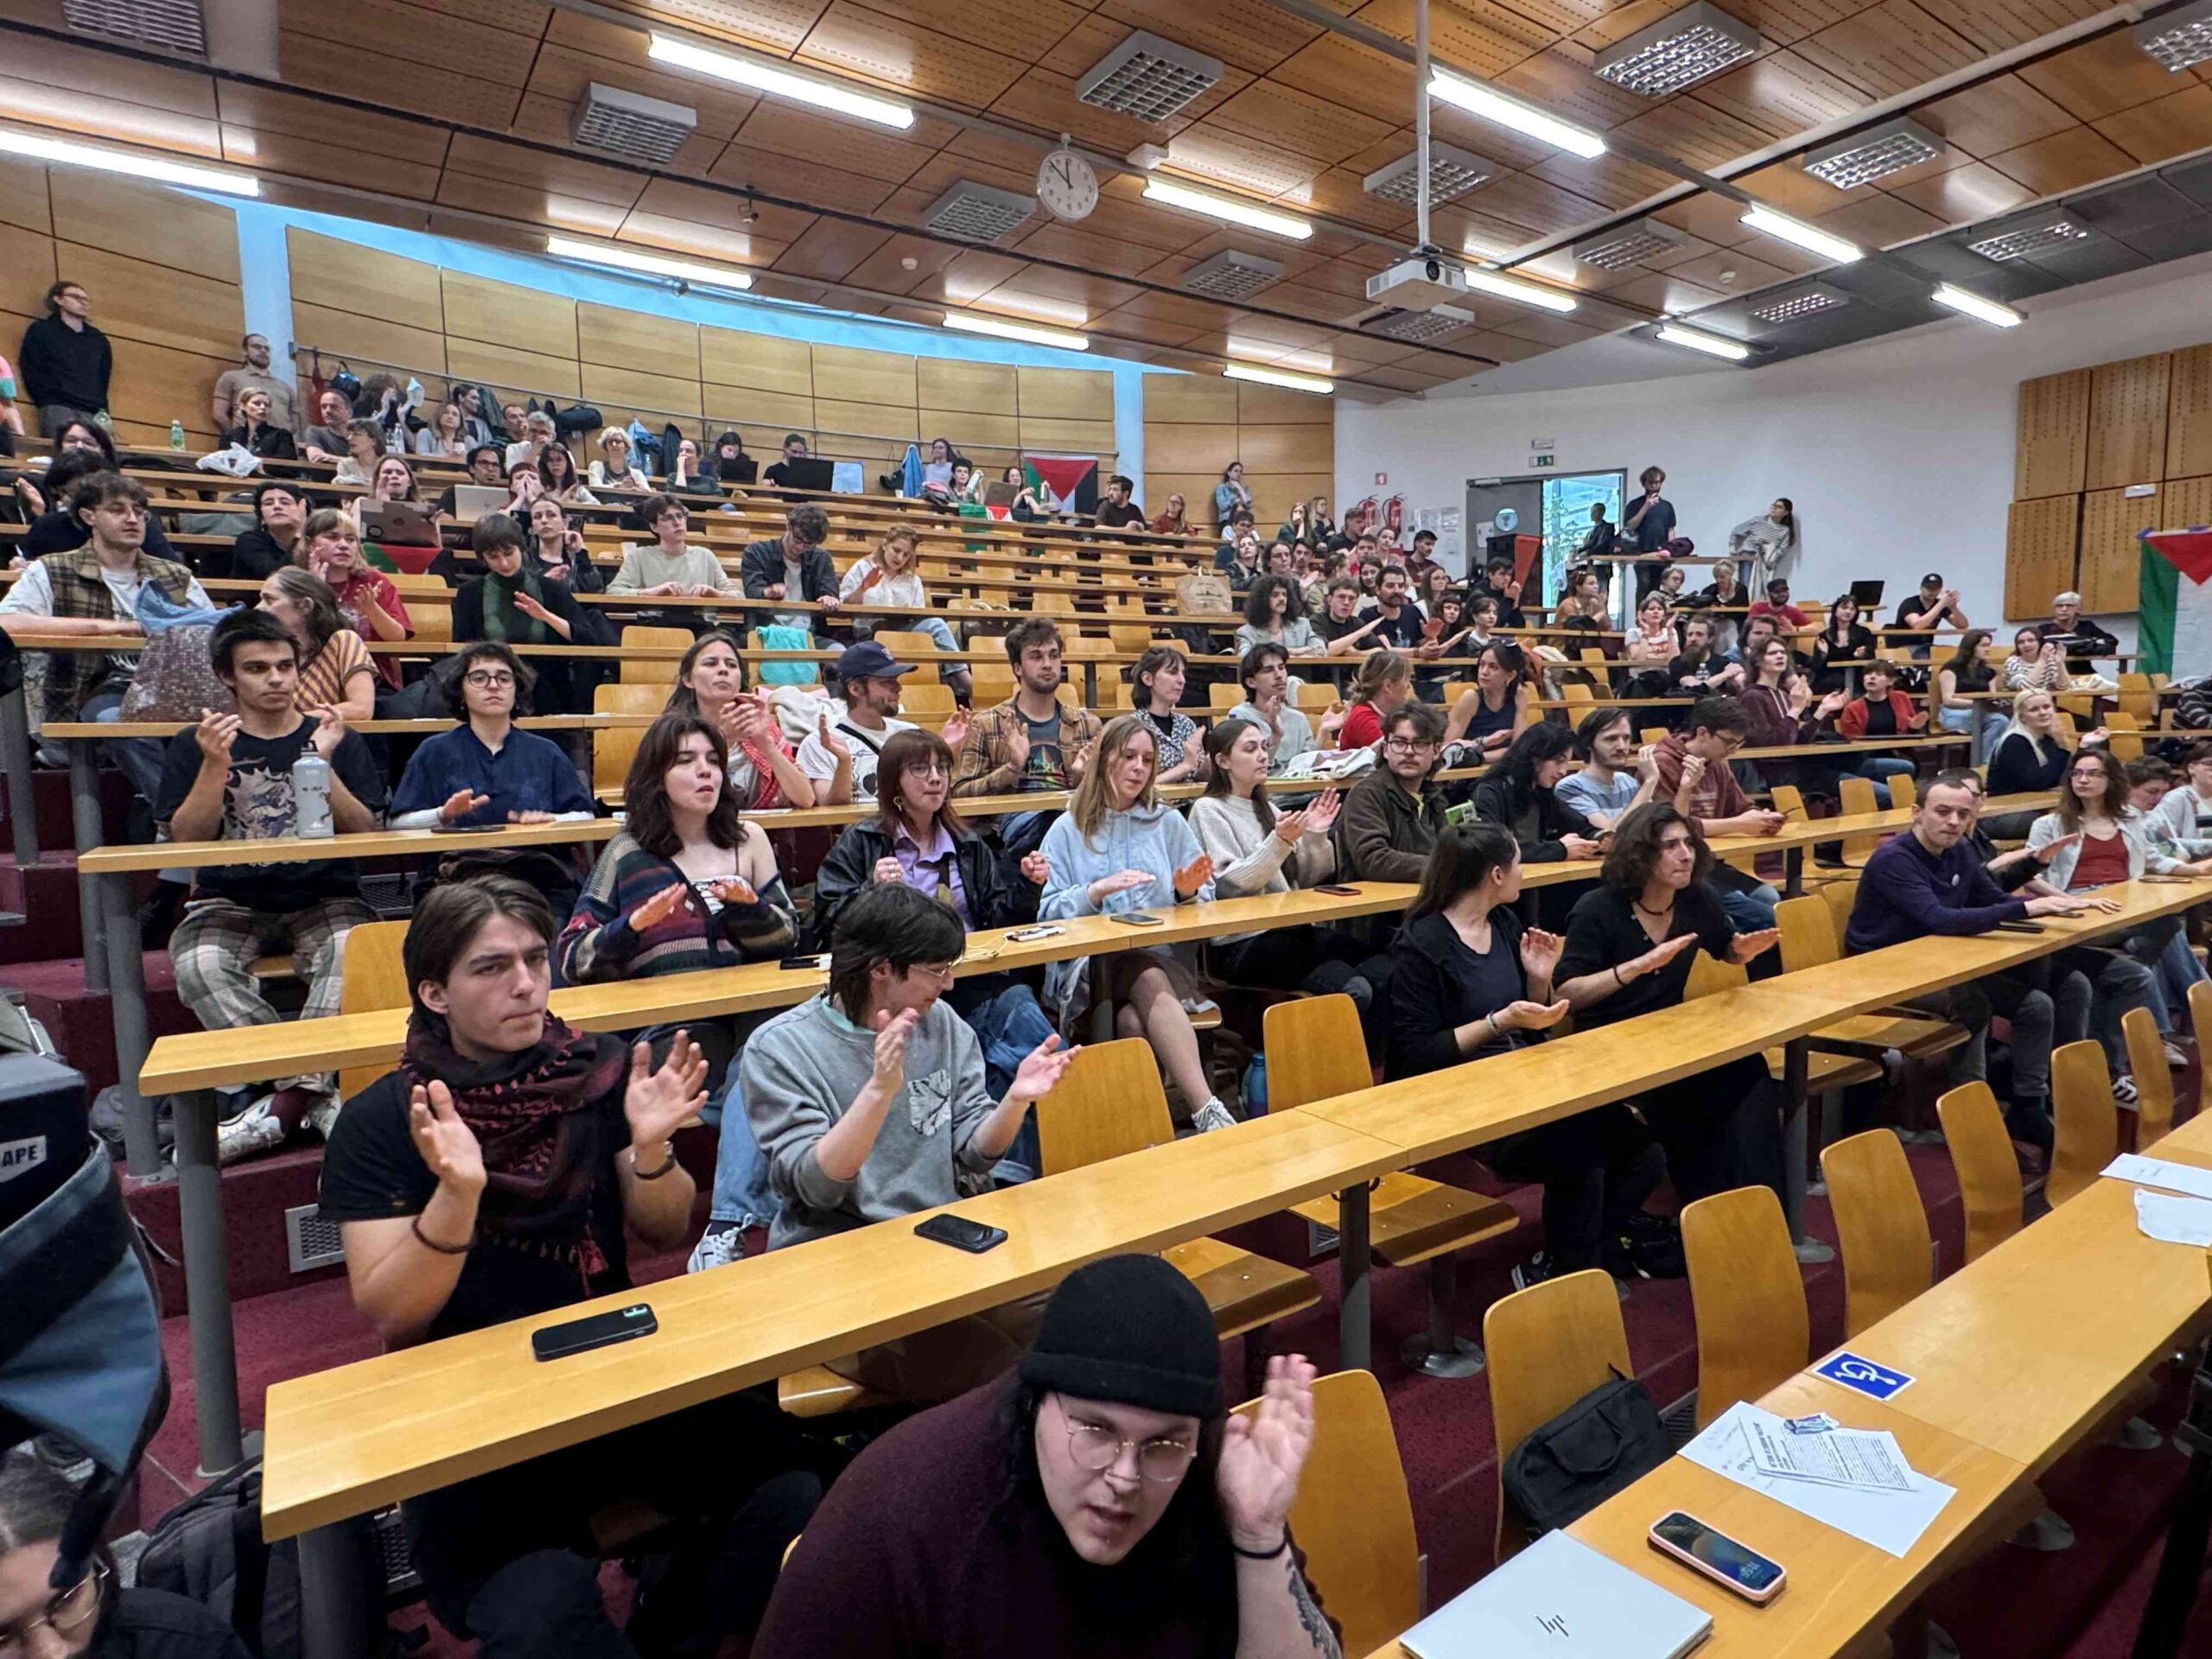 (V ŽIVO) Novinarska konferenca študentov zasedene Fakultete za družbene vede